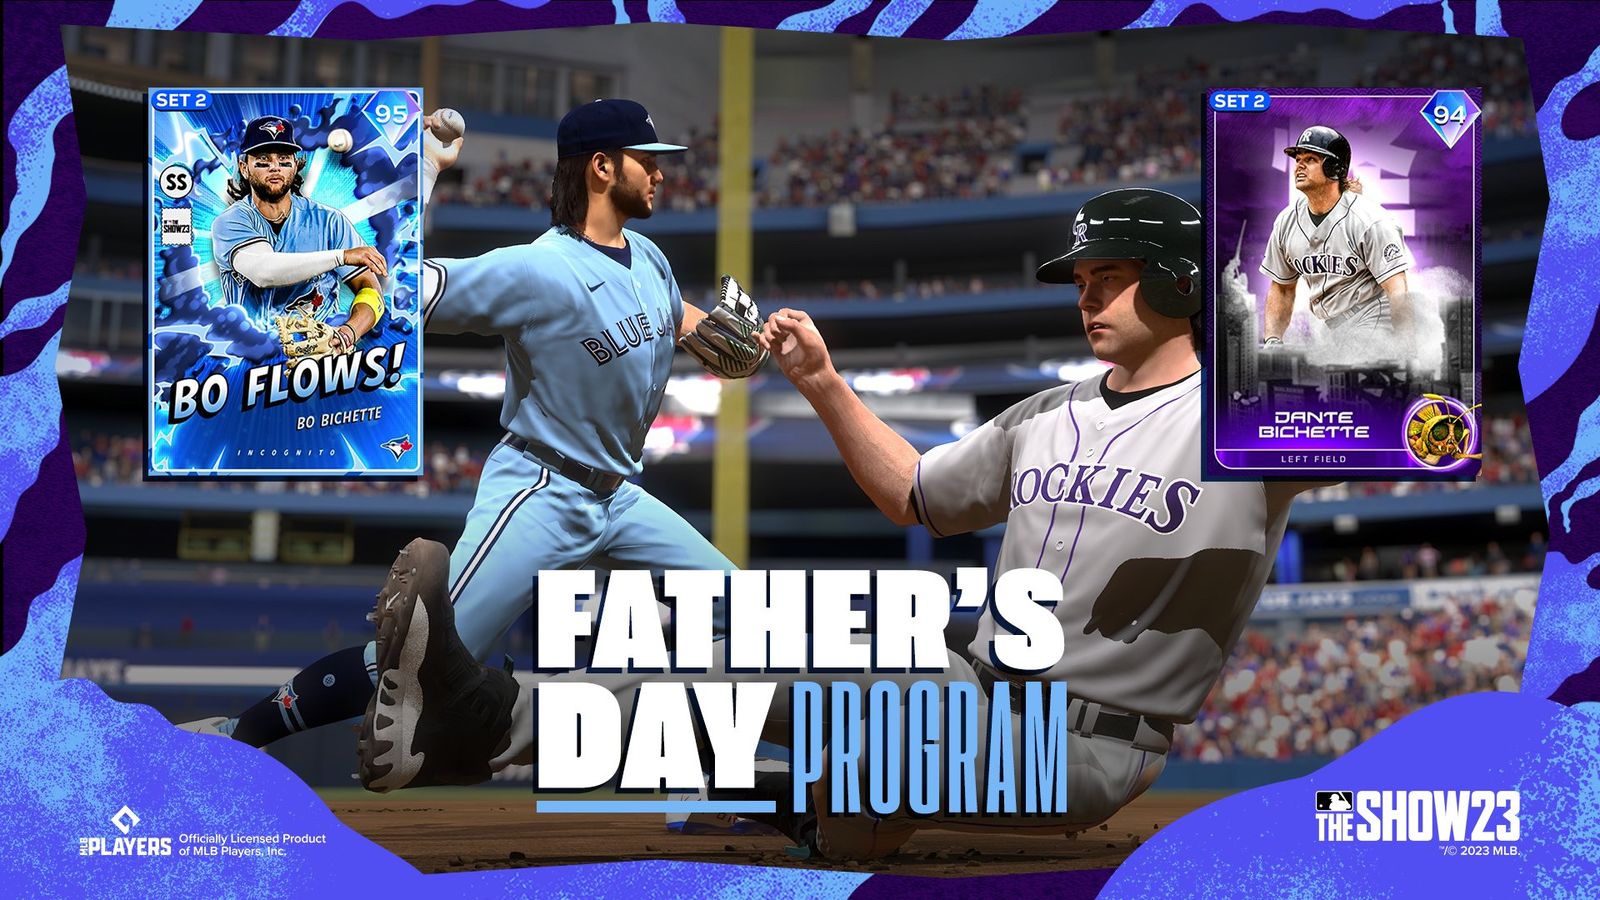 MLB The Show 23 Father's Day Program Dante Bichette and Bo Bichette cards